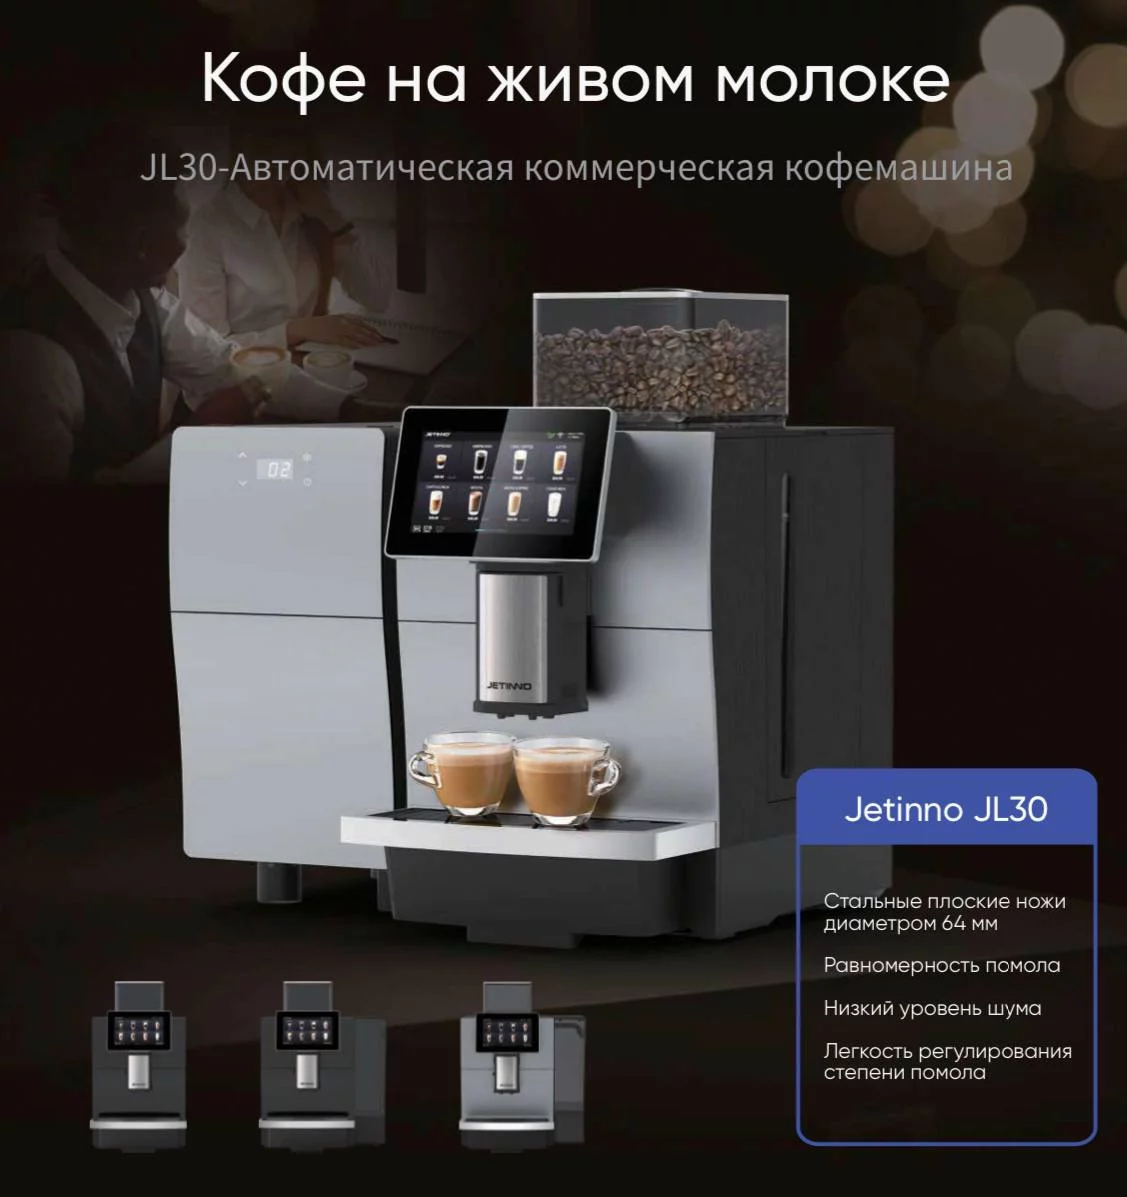 Профессиональная кофемашина Jetinno JL30